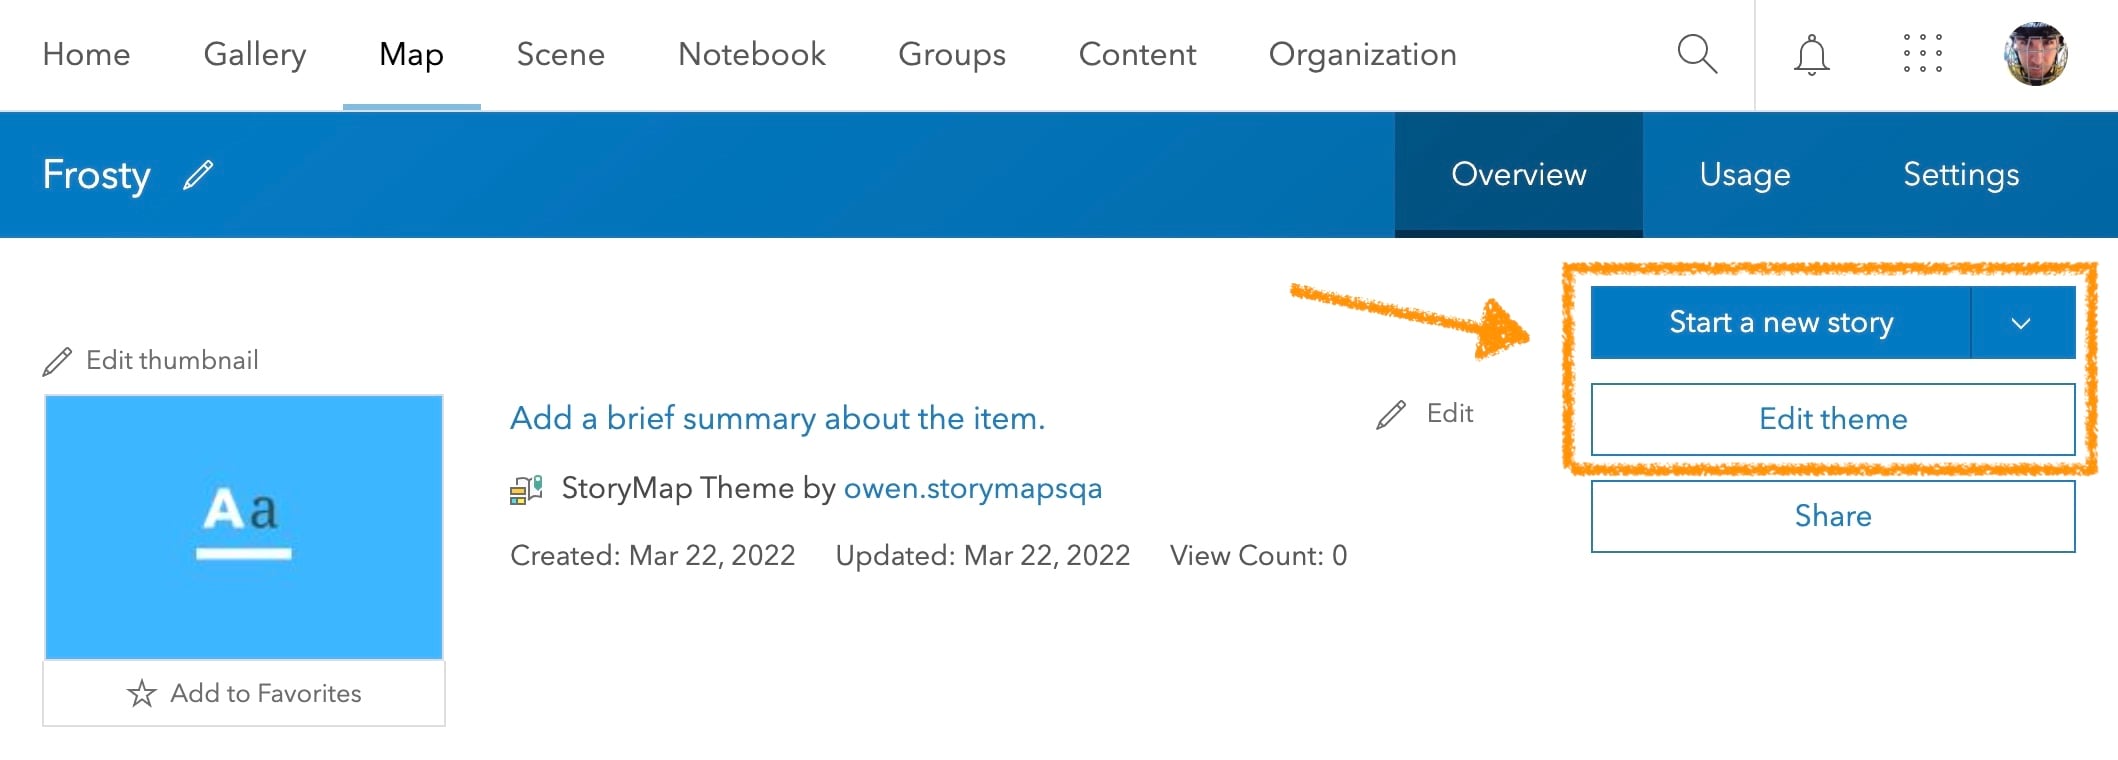 StoryMap Theme item page in ArcGIS - ArcGIS StoryMaps